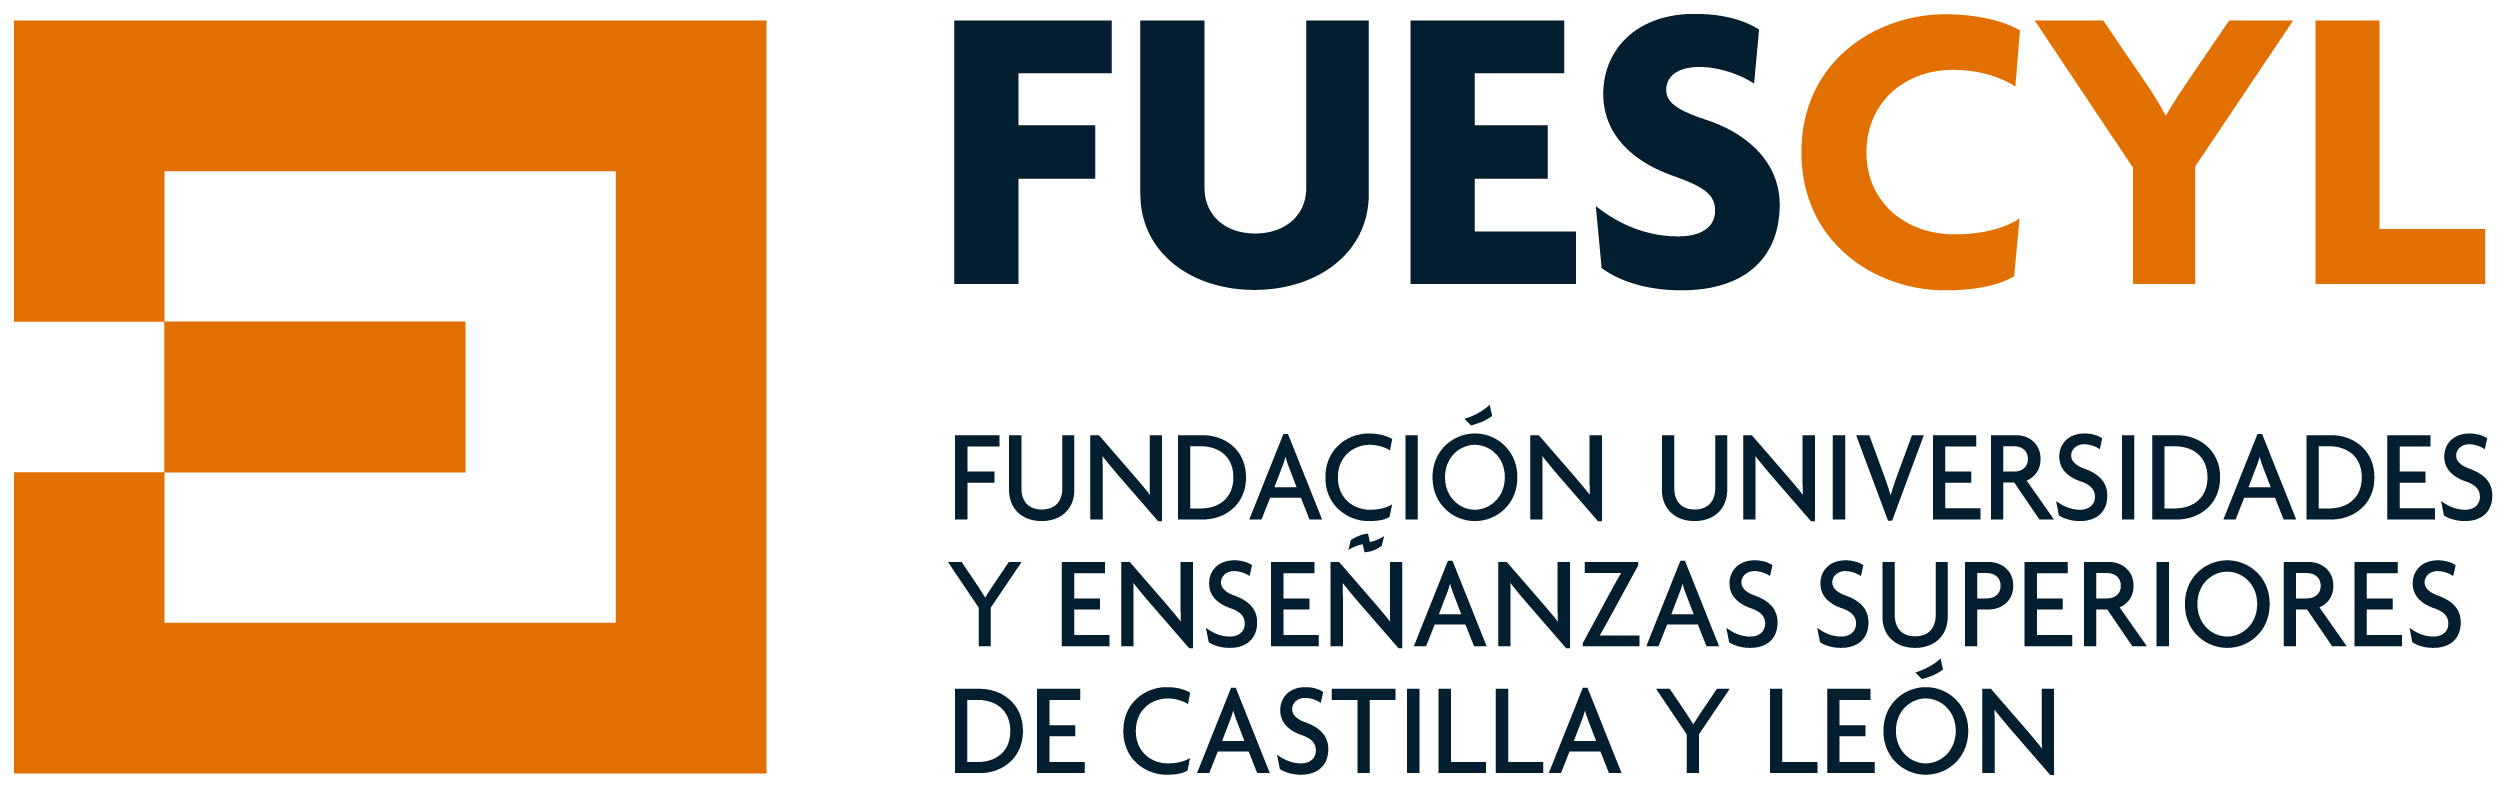 logo fuescyl